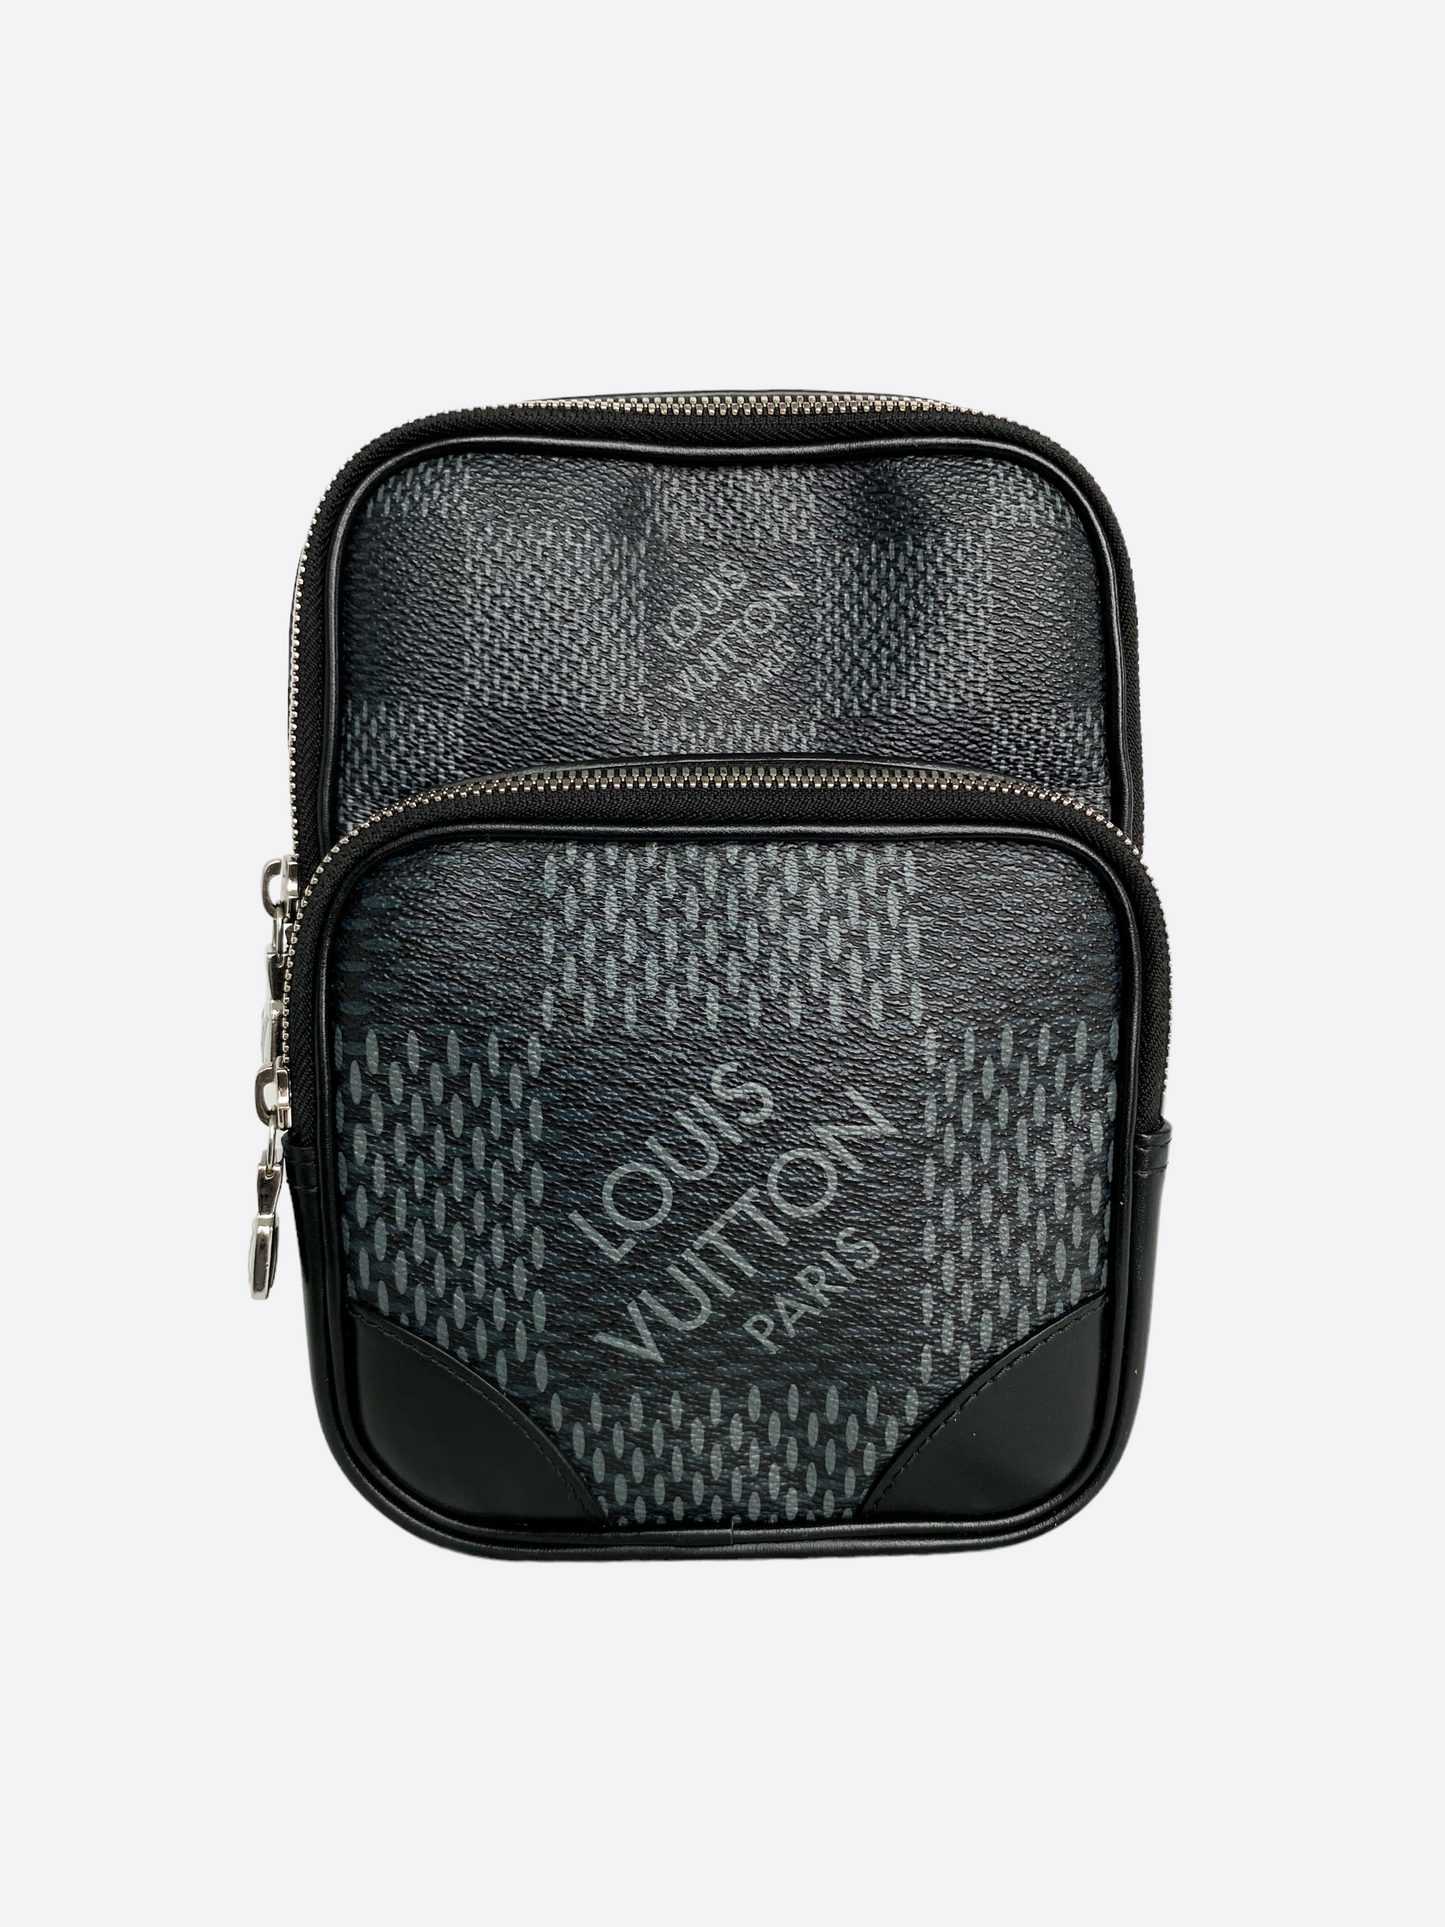 Louis Vuitton Bag 03 | 3D model